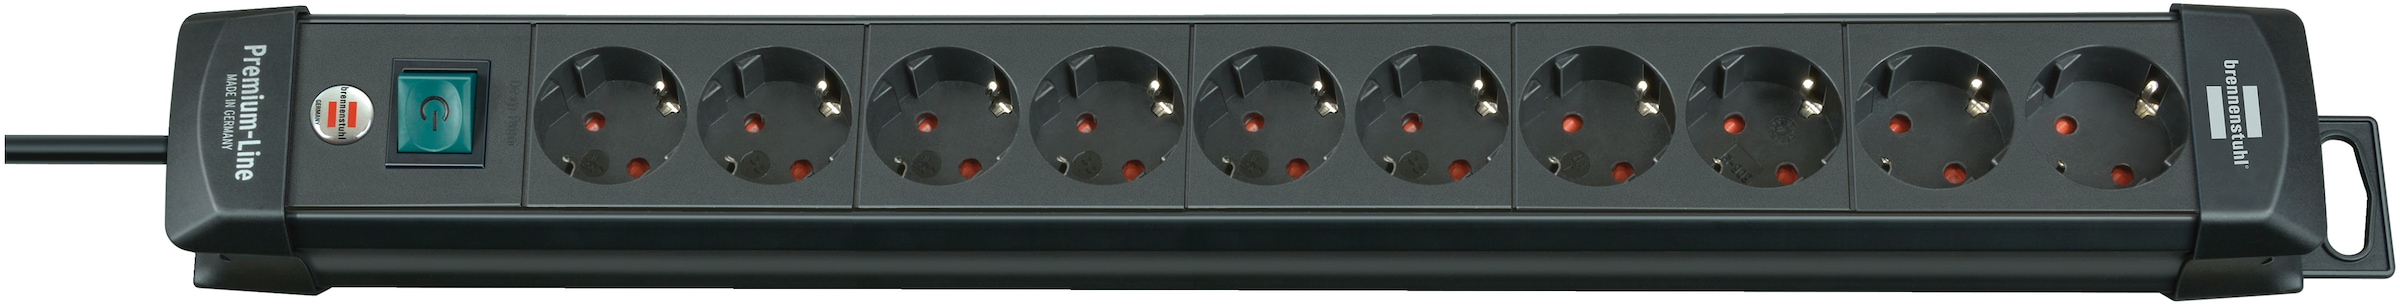 Brennenstuhl Steckdosenleiste "Premium-Line", 10-fach, (Kabellänge 3 m), mit Schalter und mit 45 Winkel der Schutzkontak